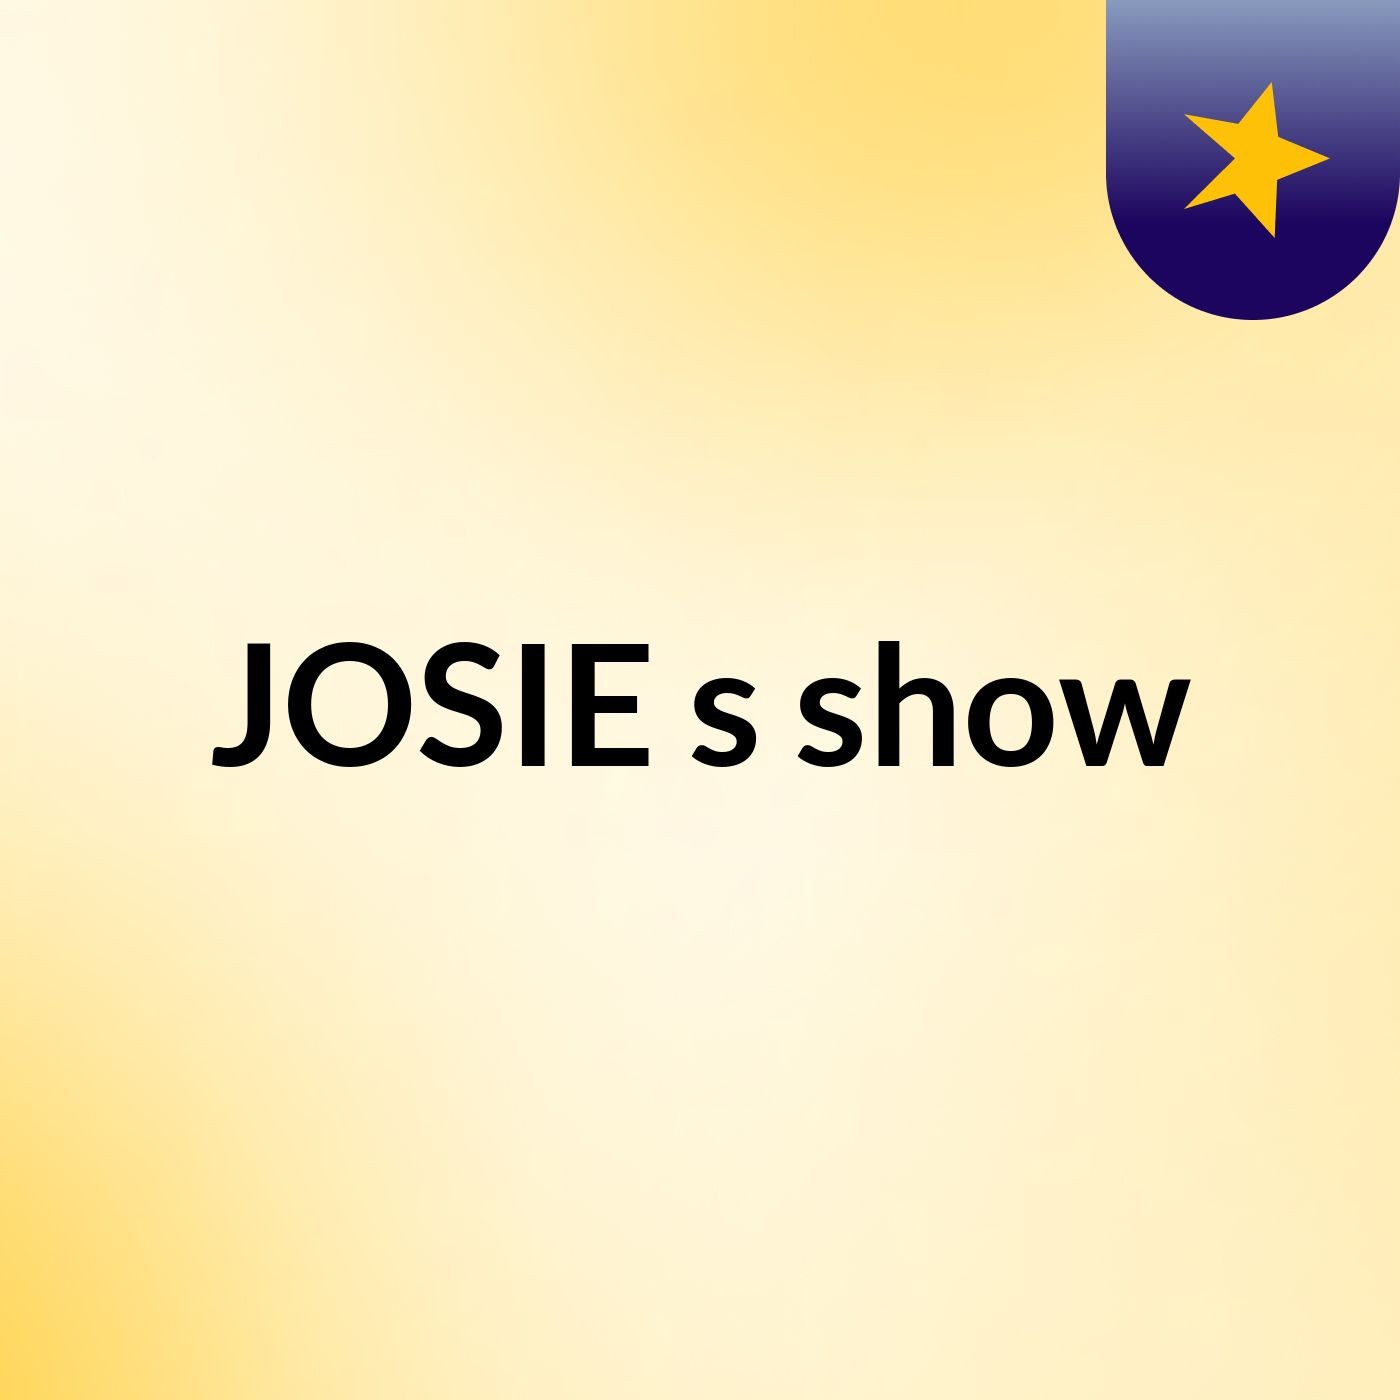 JOSIE's show